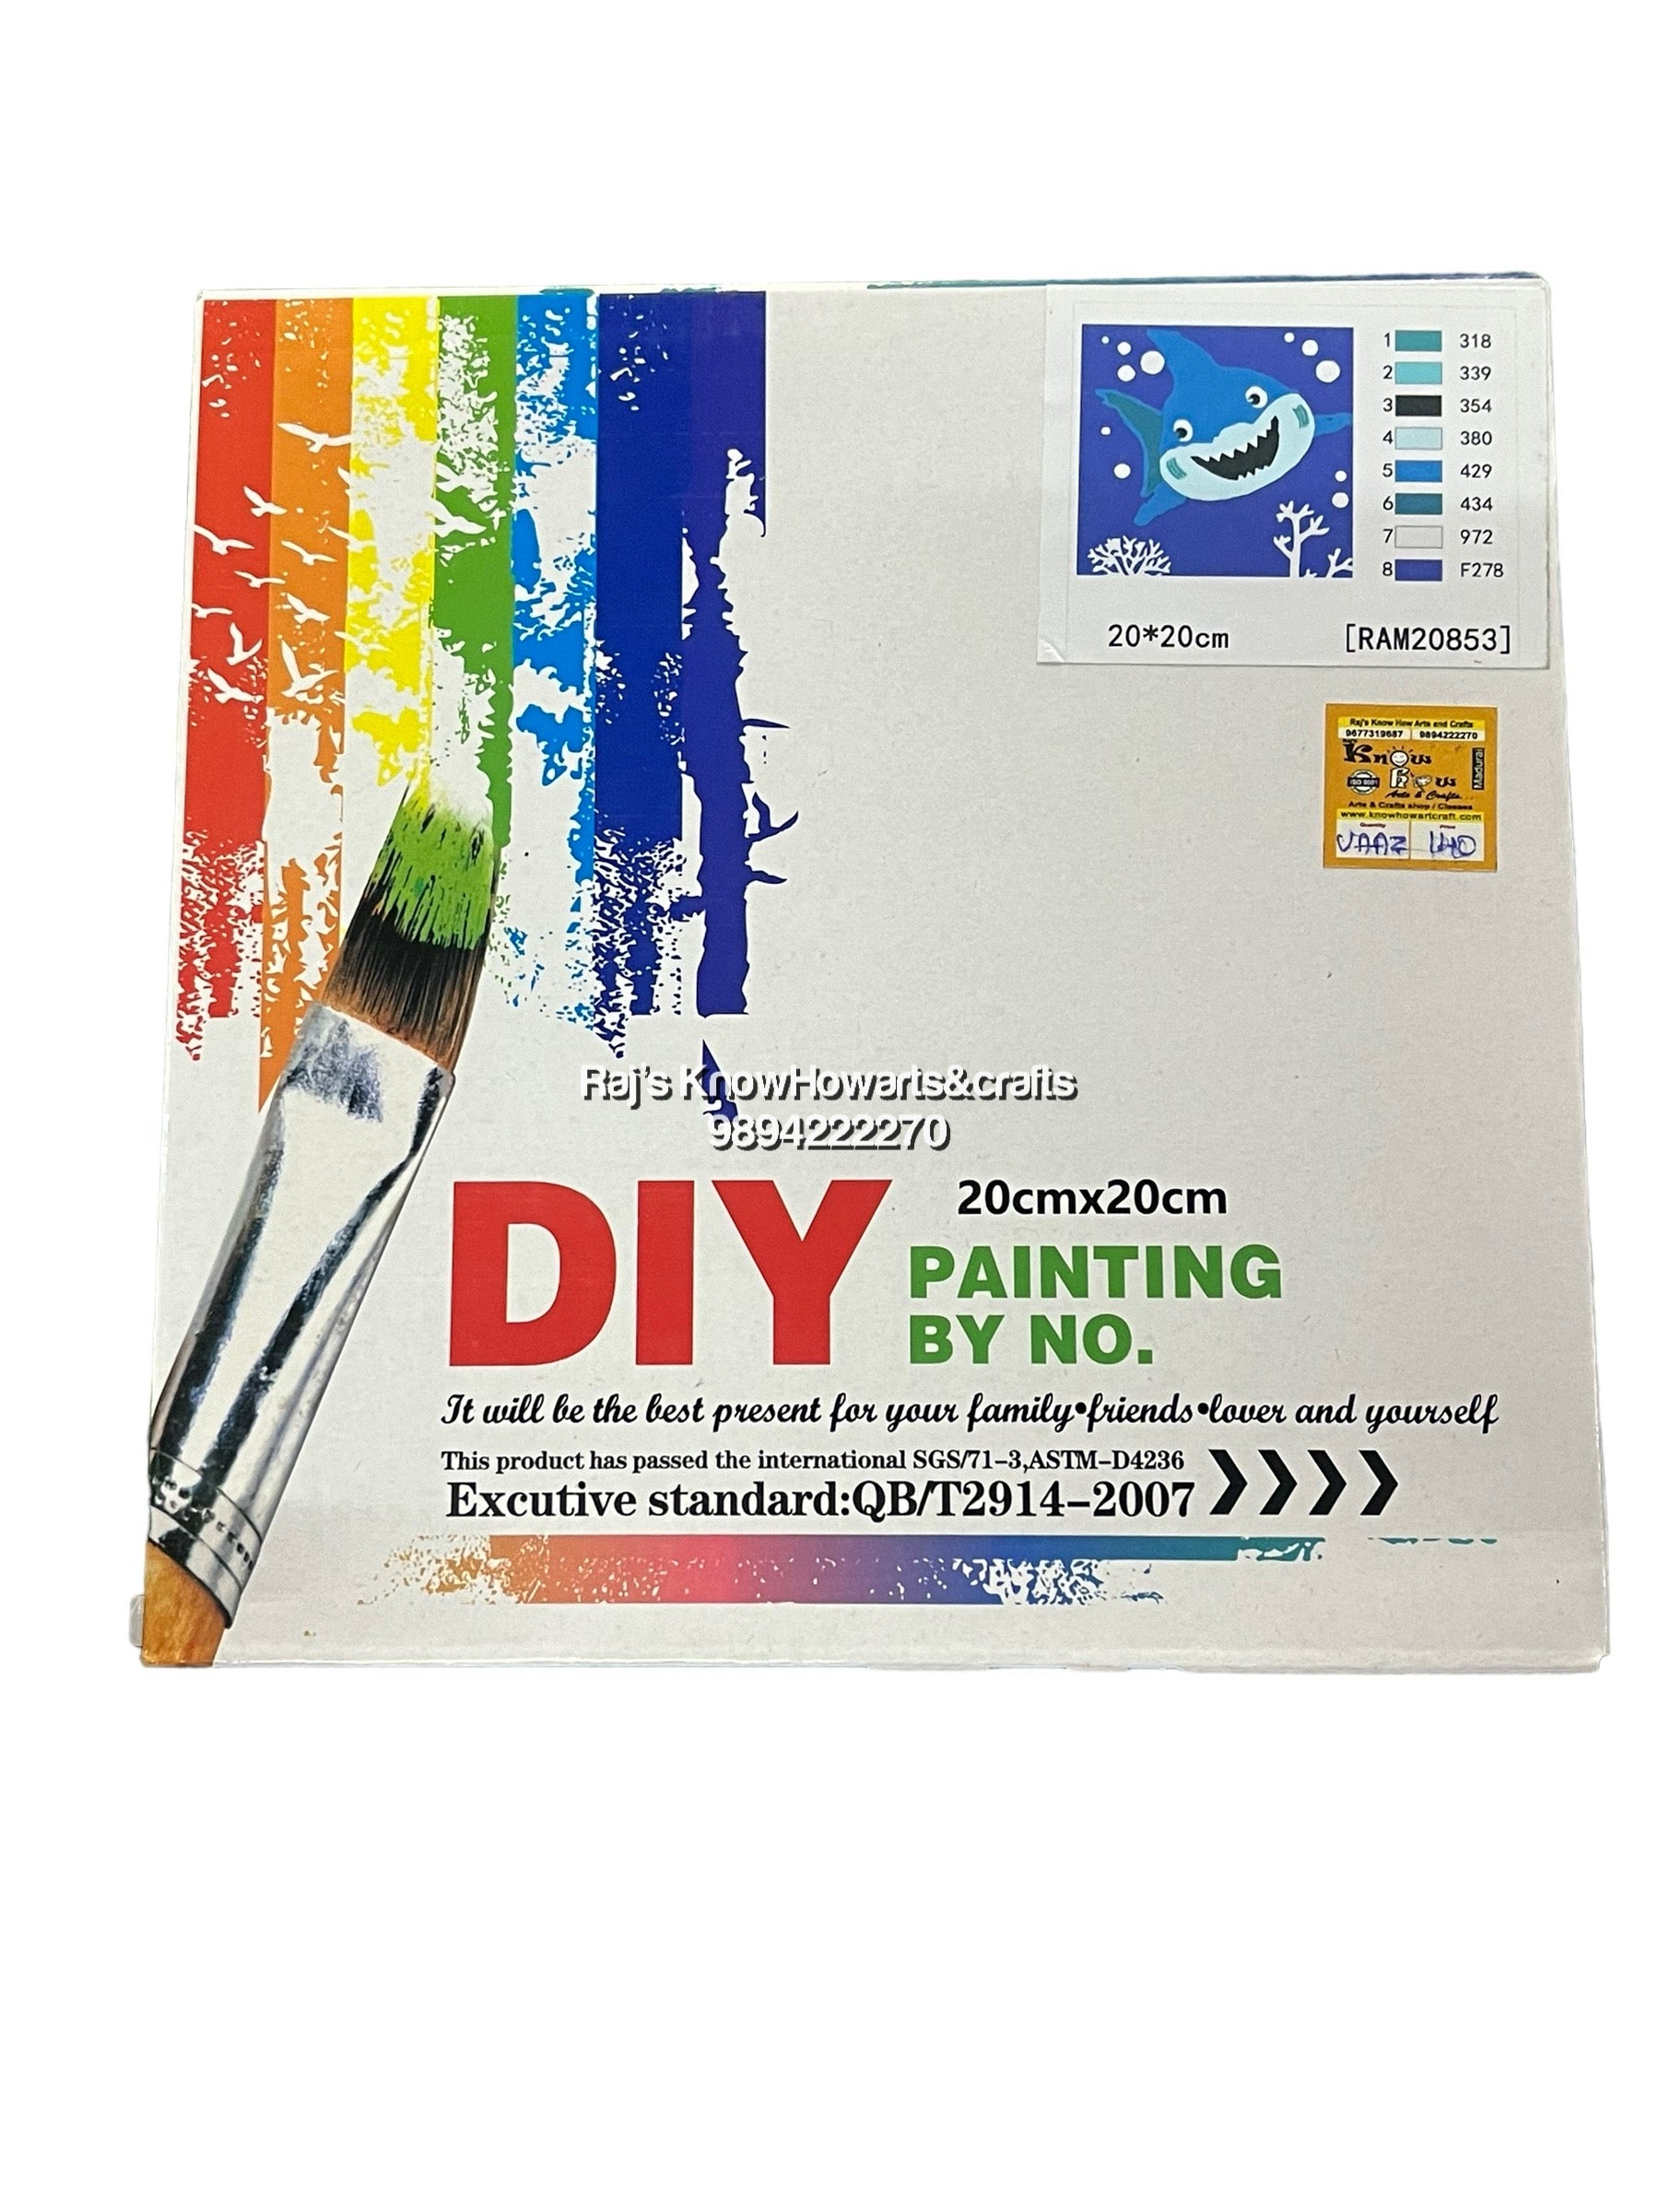 DIY painting 20cm x 20cm